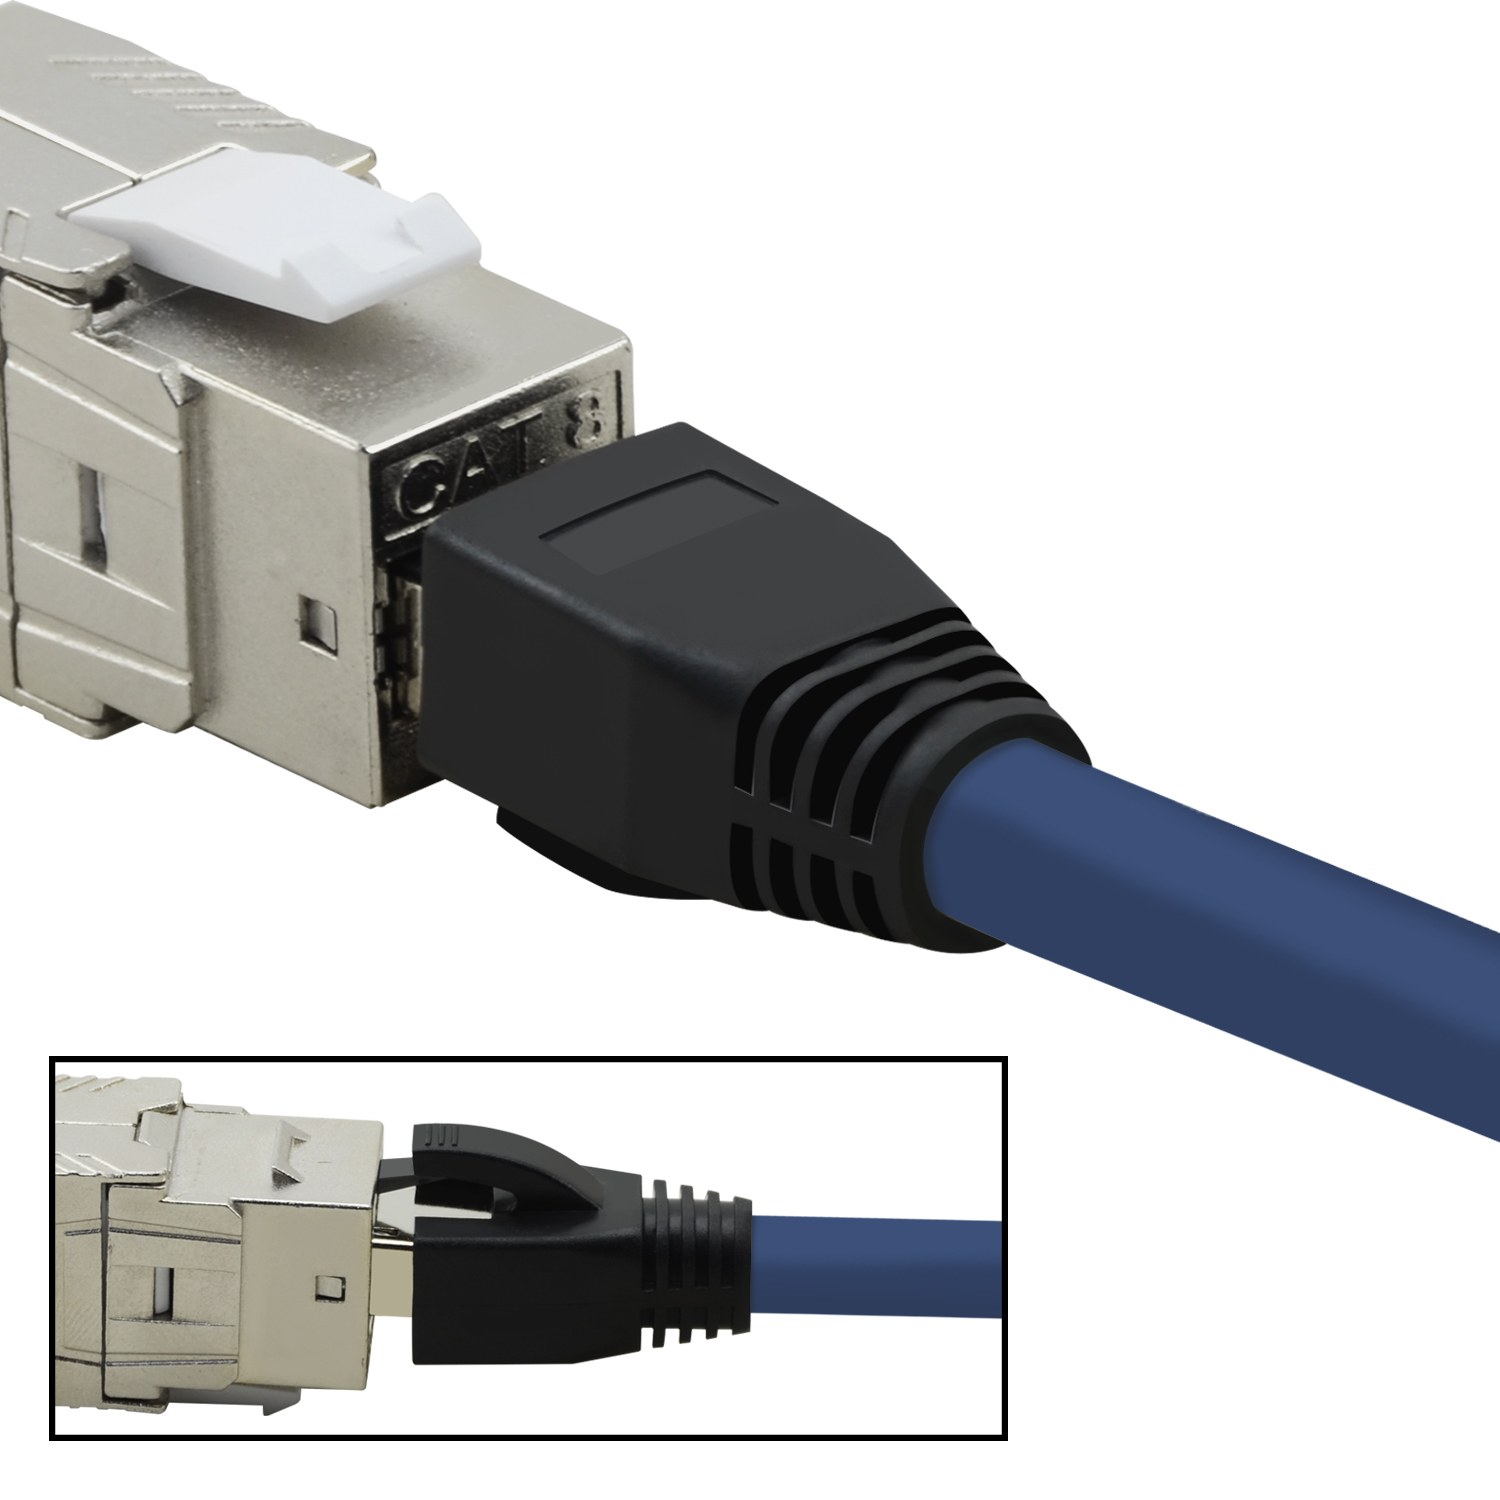 blau, m Netzwerkkabel 10m Patchkabel S/FTP Netzwerkkabel, 40 TPFNET 10 GBit, /